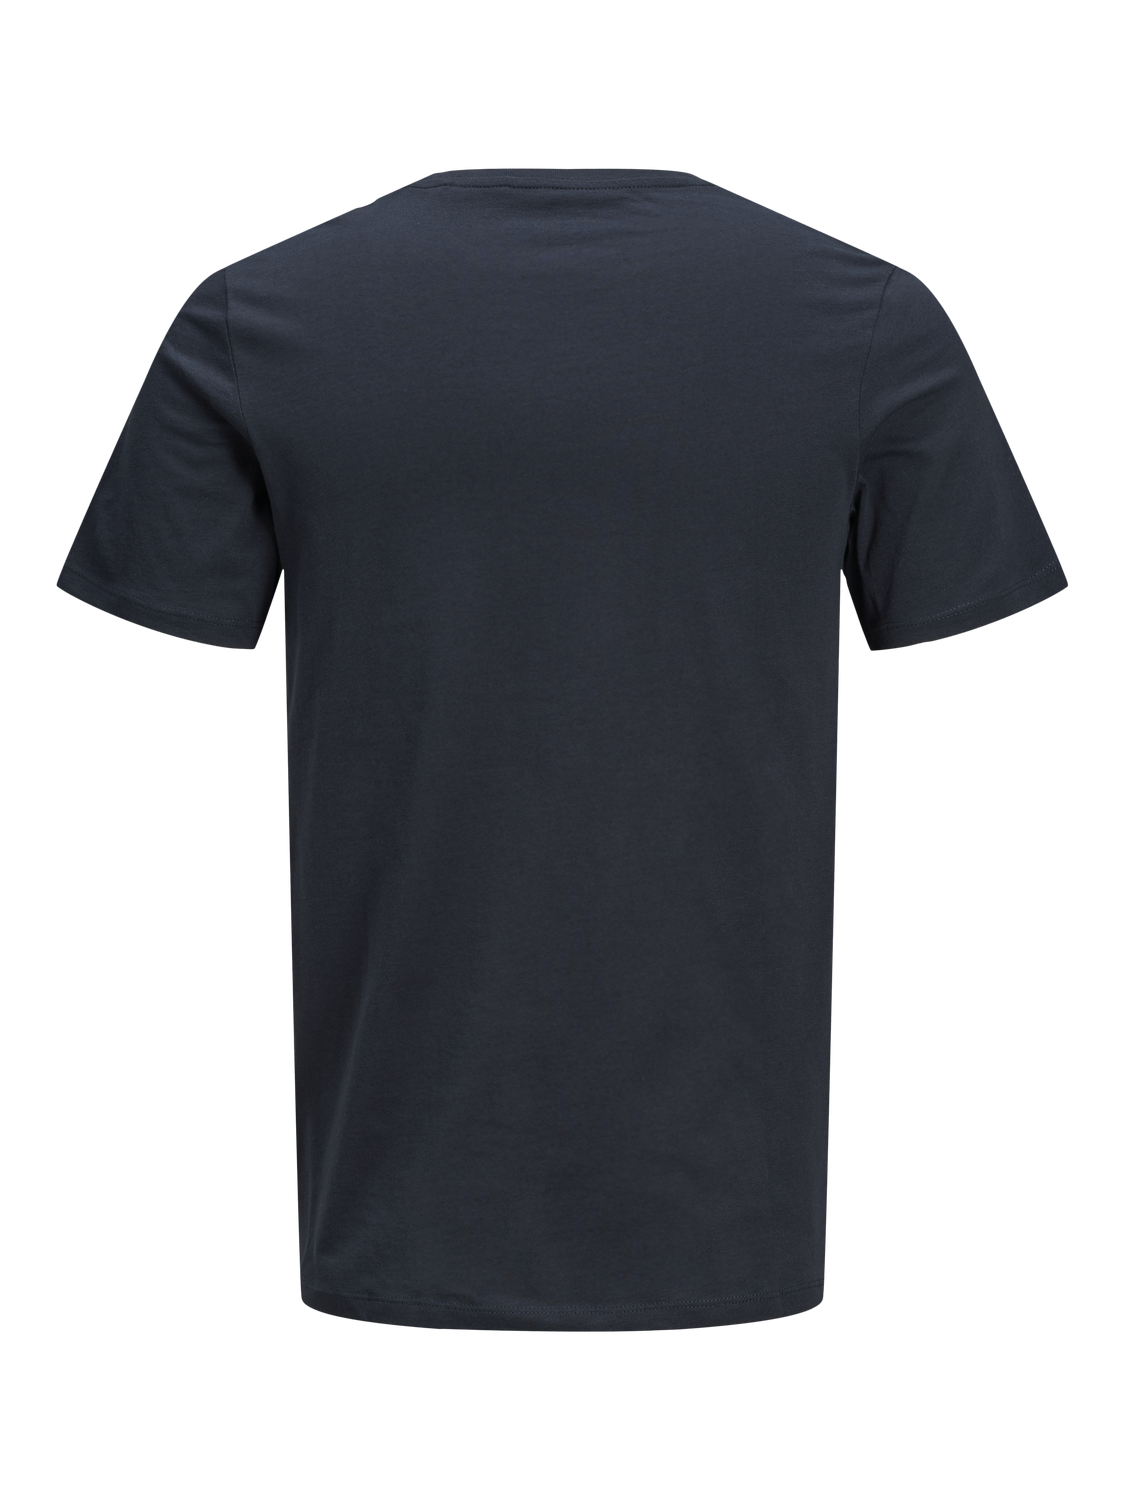 Camiseta manga corta con logo azul - JJDENIM